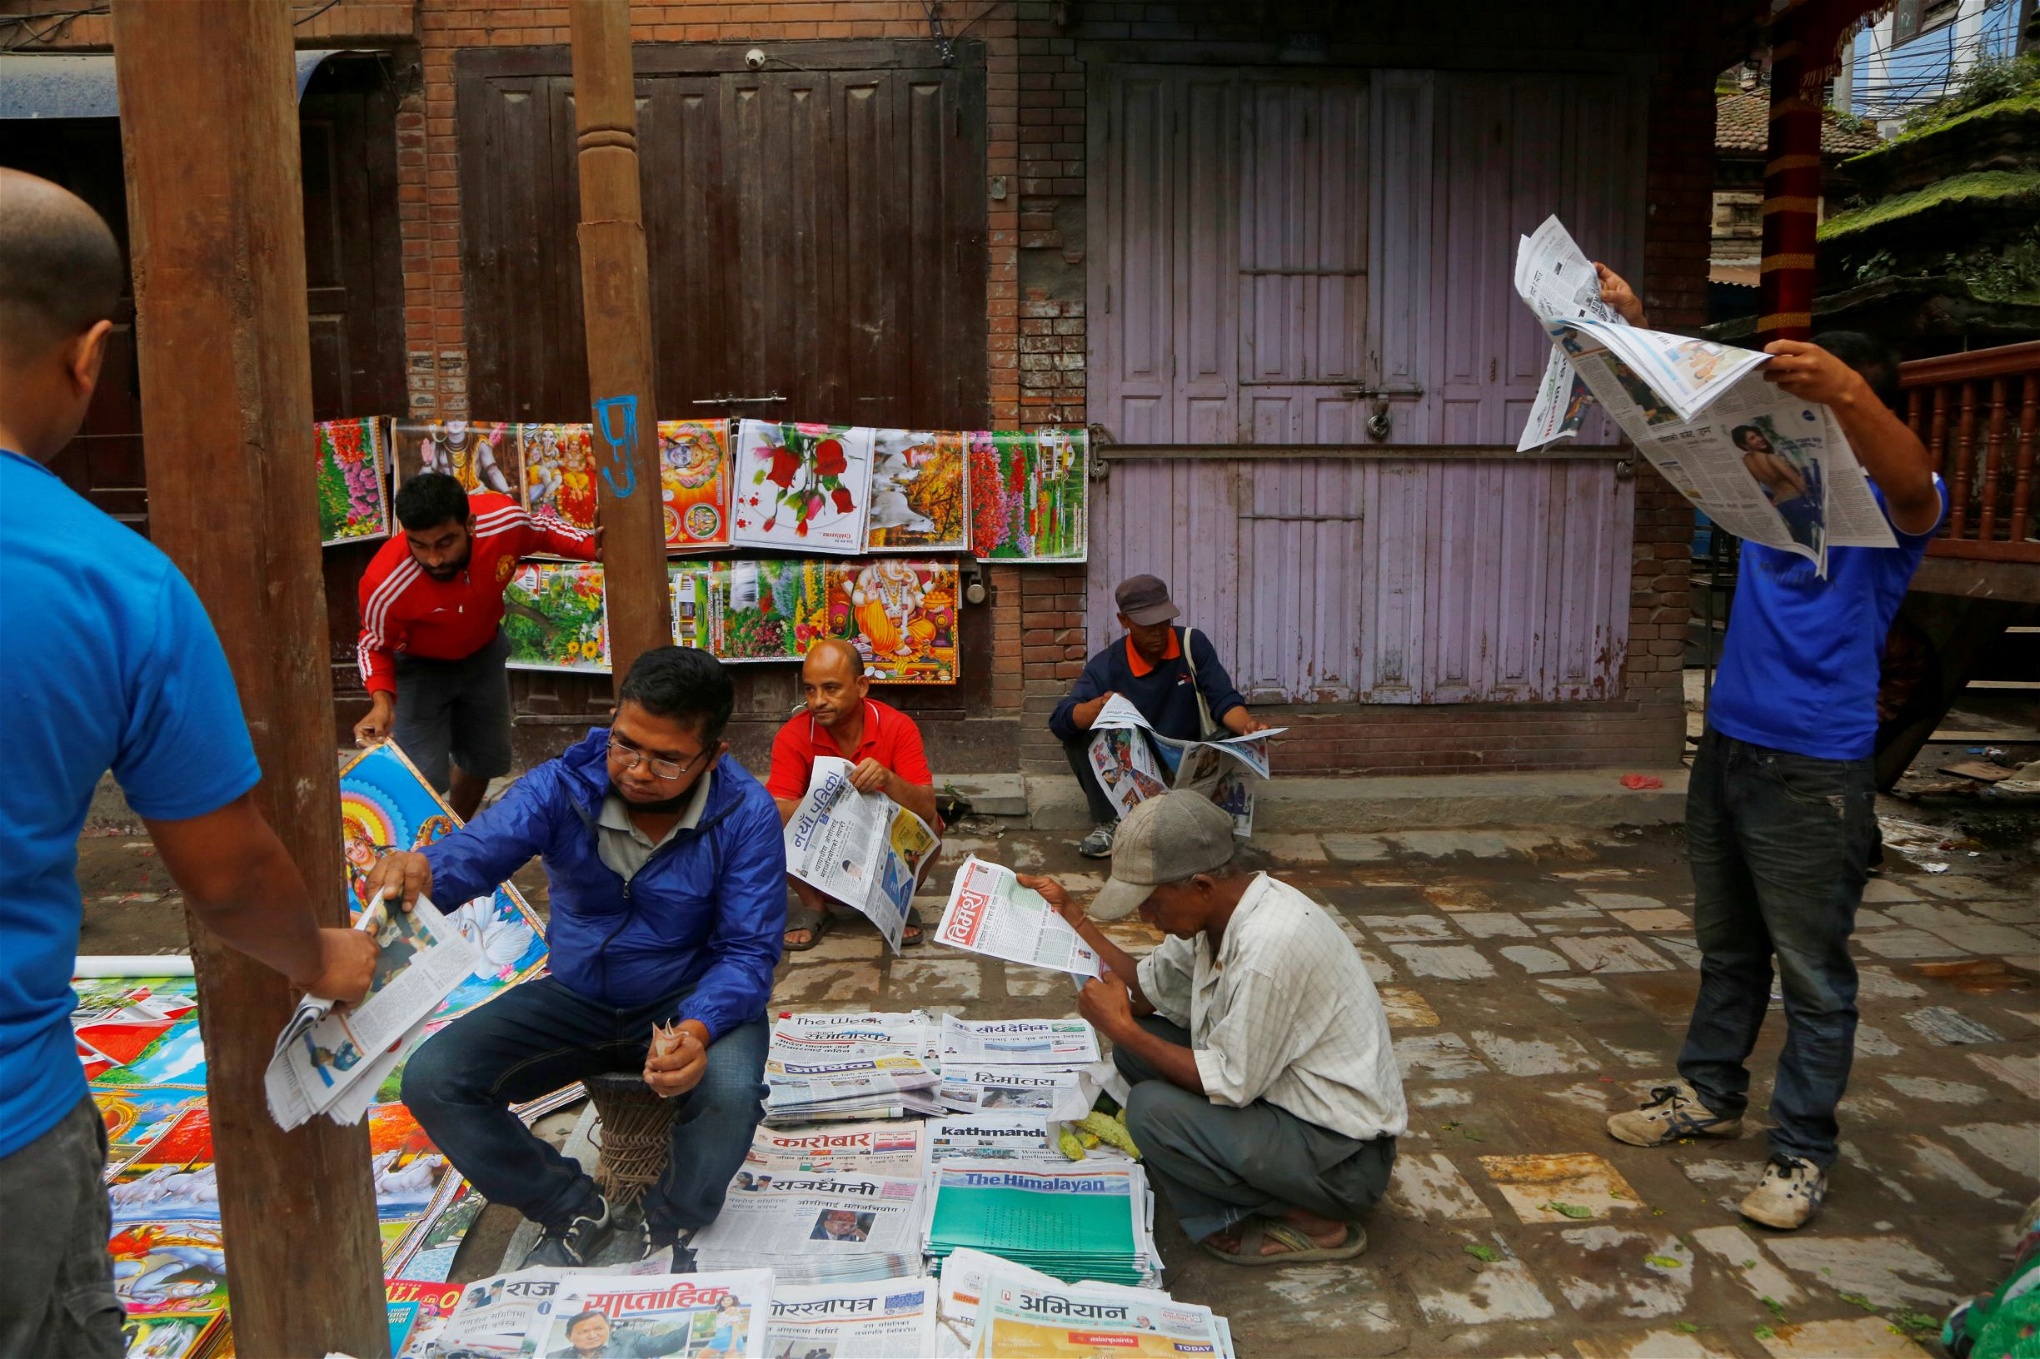 Tidningsläsare i Nepal. Landet har infört en ny lag införts som innebär att offentliggörandet av viss information kan leda till fängelsestraff.